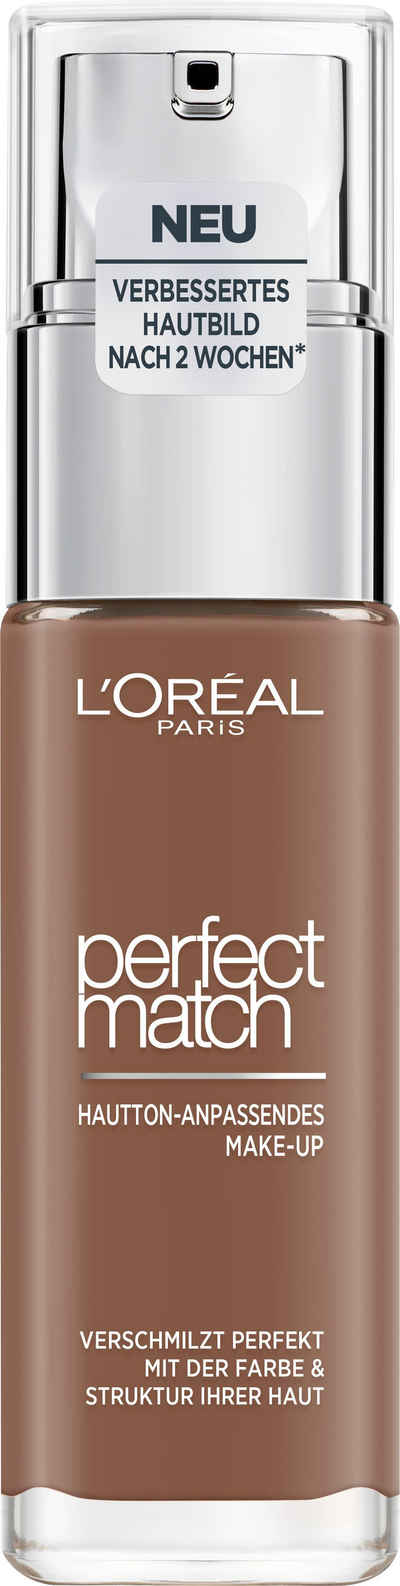 L'ORÉAL PARIS Основа Perfect Match Make-Up